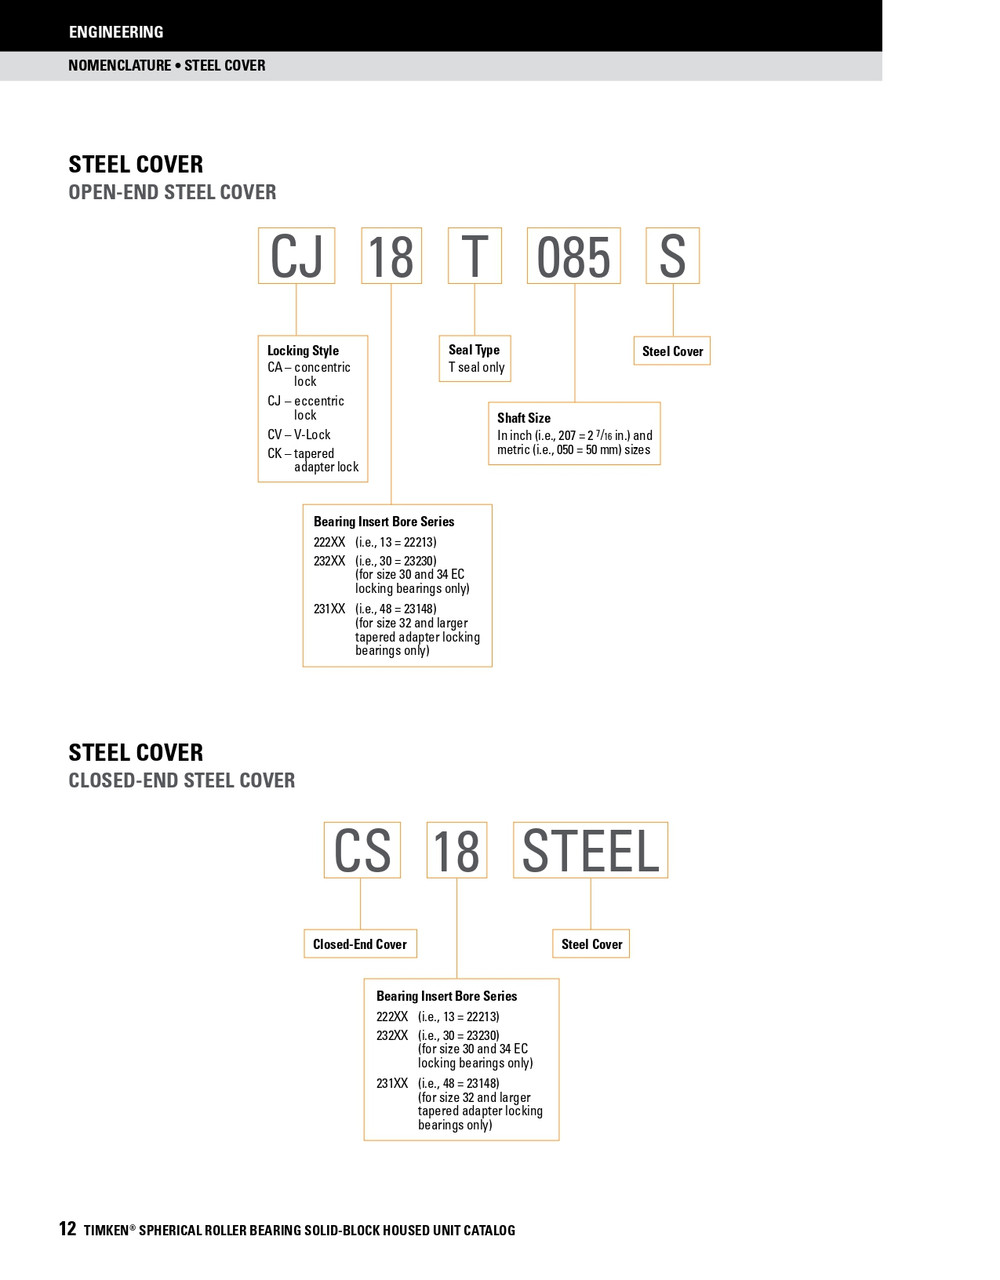 2" Timken SRB Steel Open End Cover w/Teflon Seal - TA/DV Taper Lock Bushing Type  CK11T200S